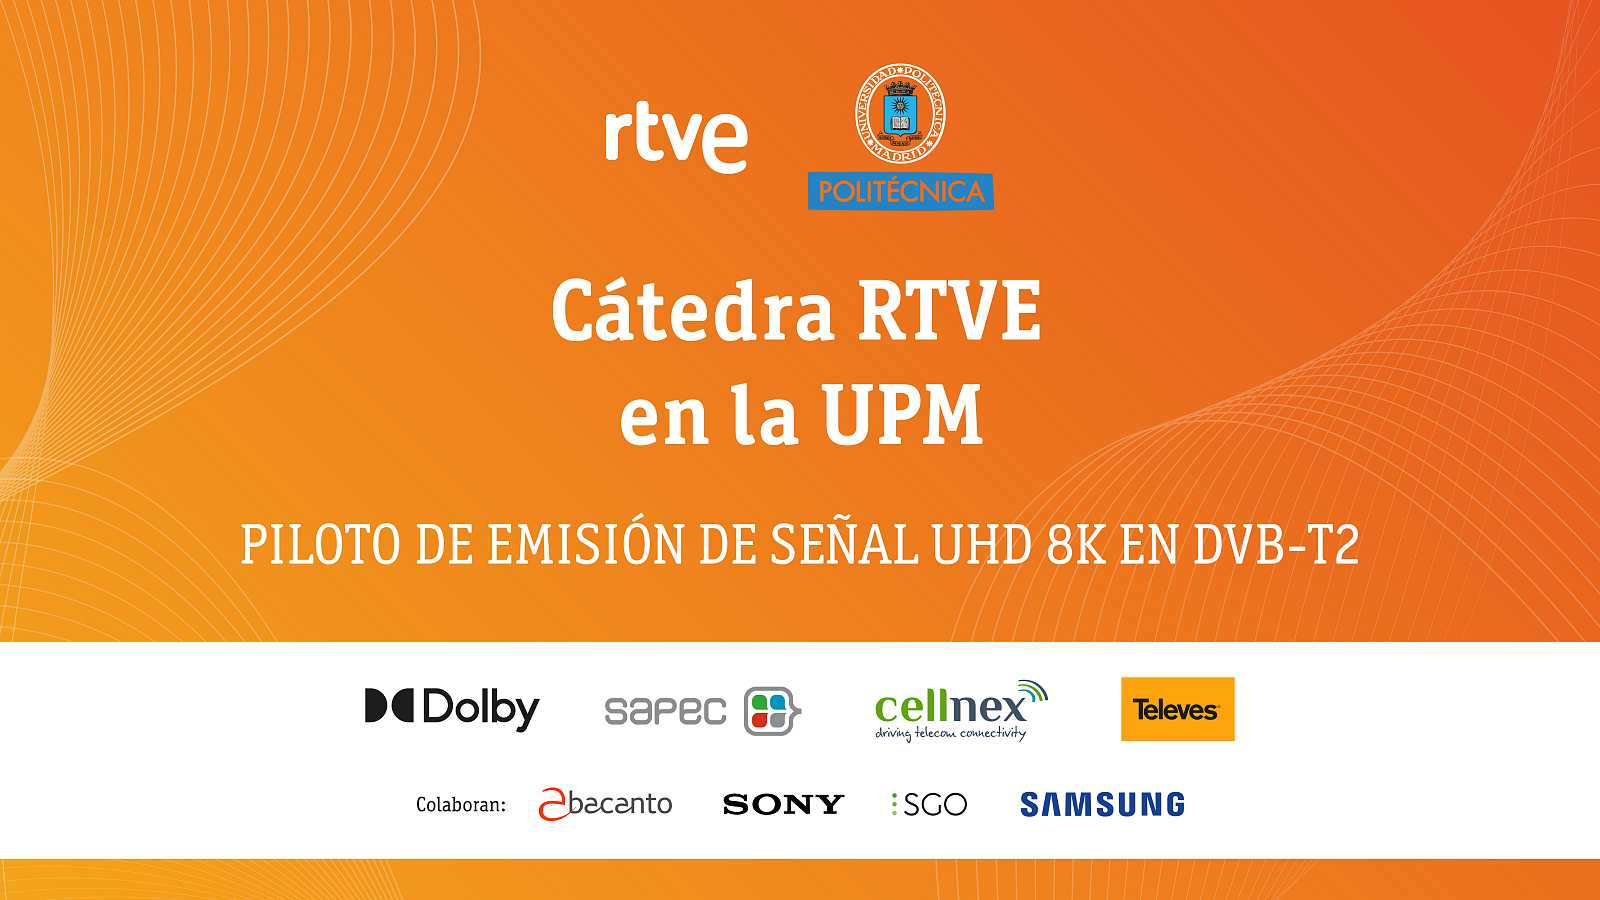 La Cátedra RTVE en la UPM y Cisco preparan la primera emisión TDT 8K en directo